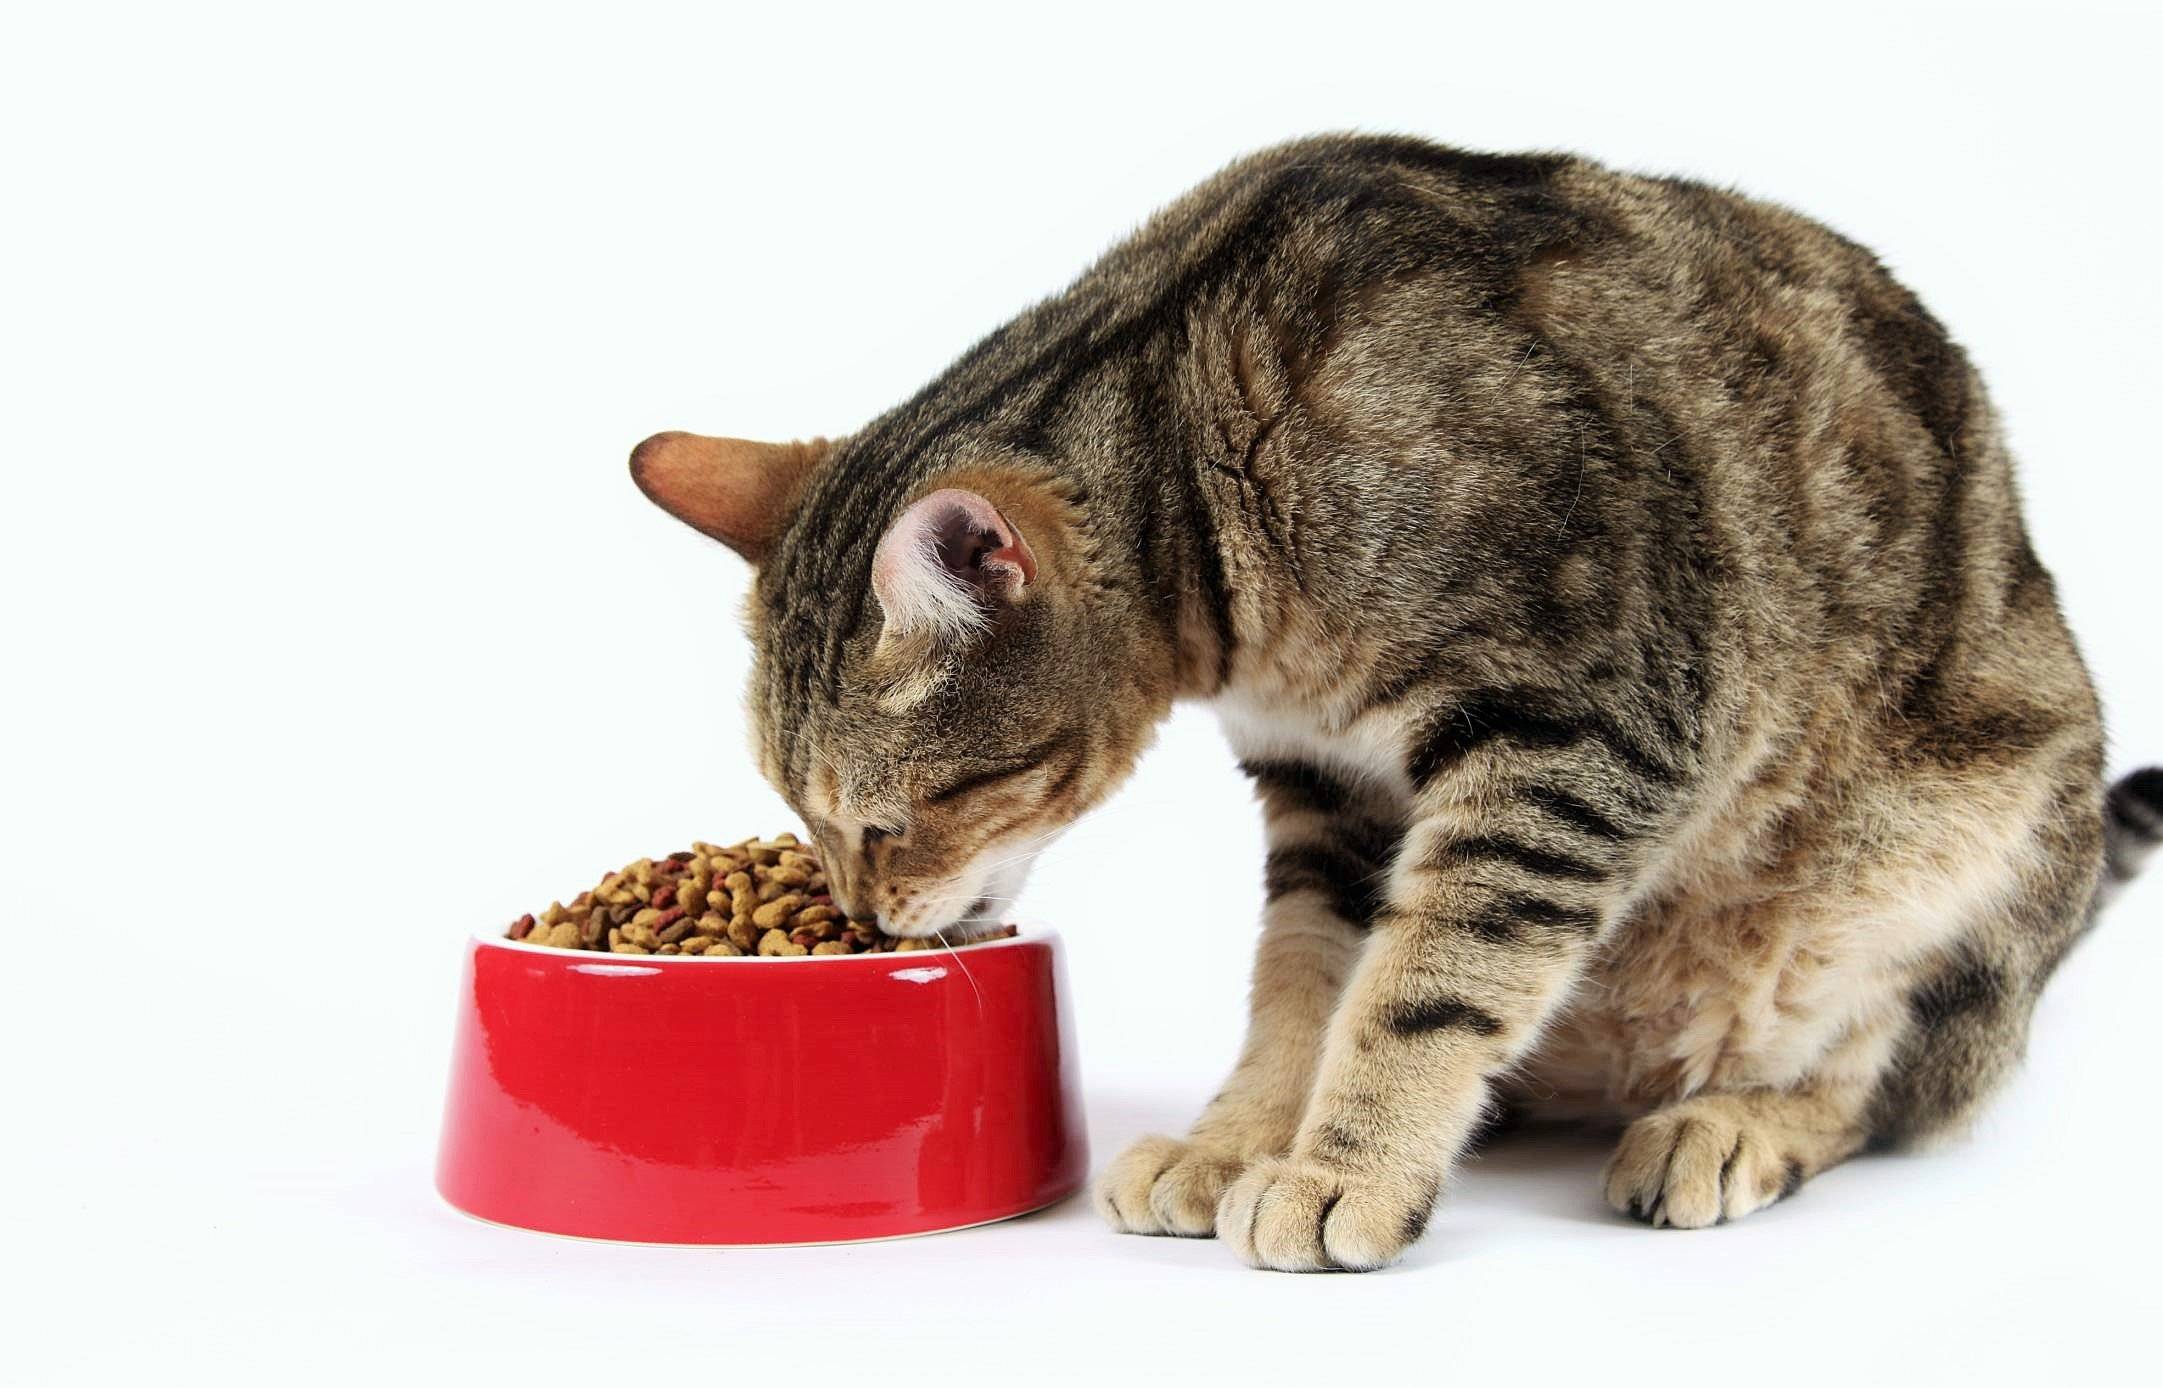 Питание для кошек и котов: сбалансированный рацион, корма или натуралка...